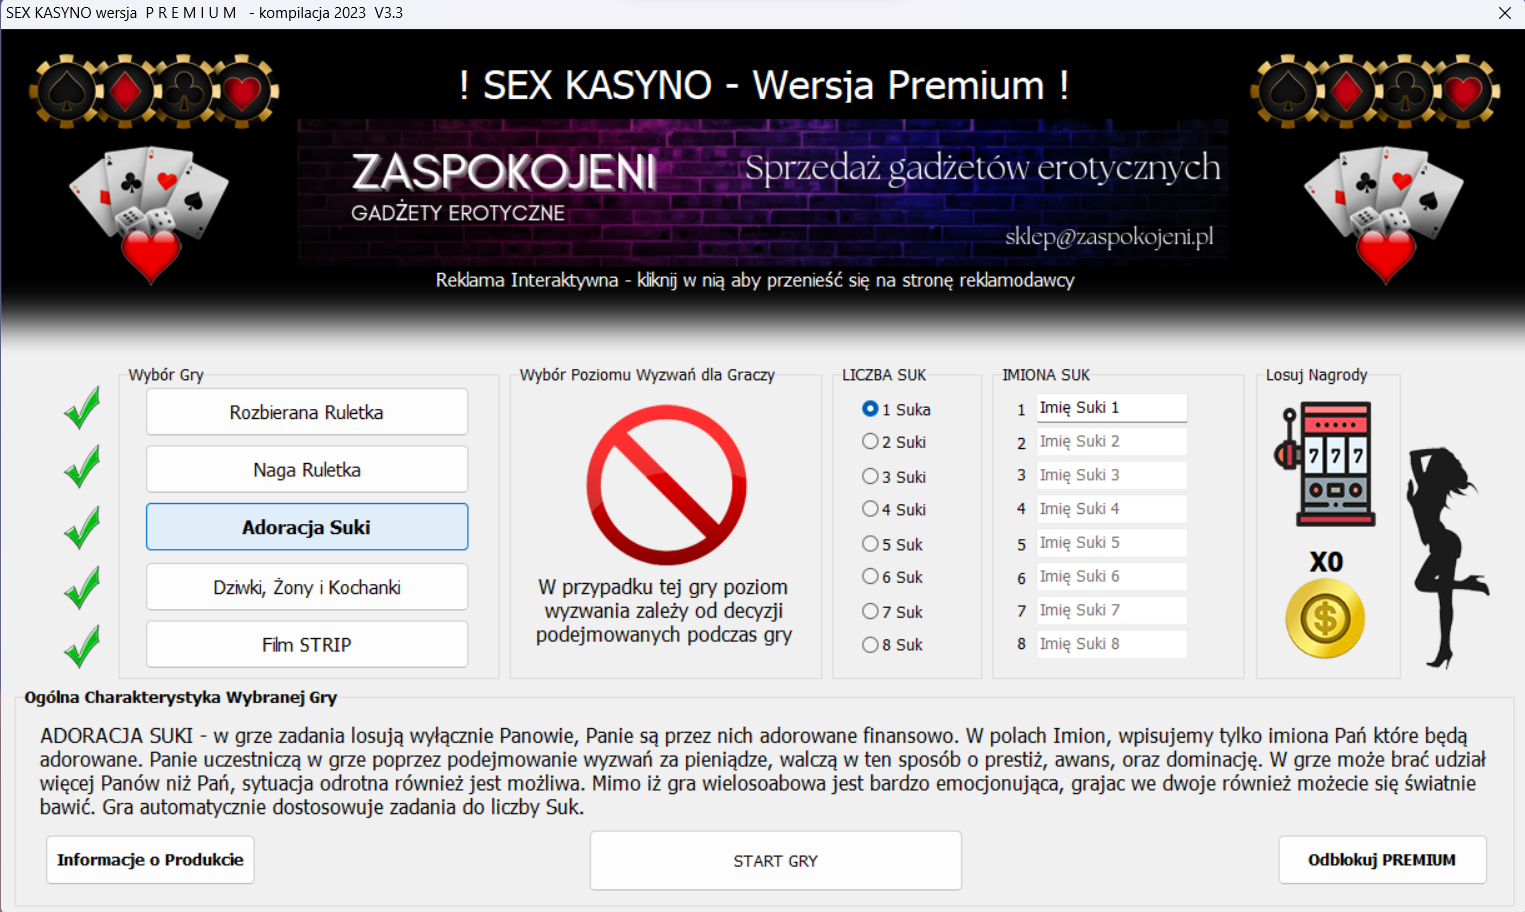 Sex Kasyno - wersja Premium